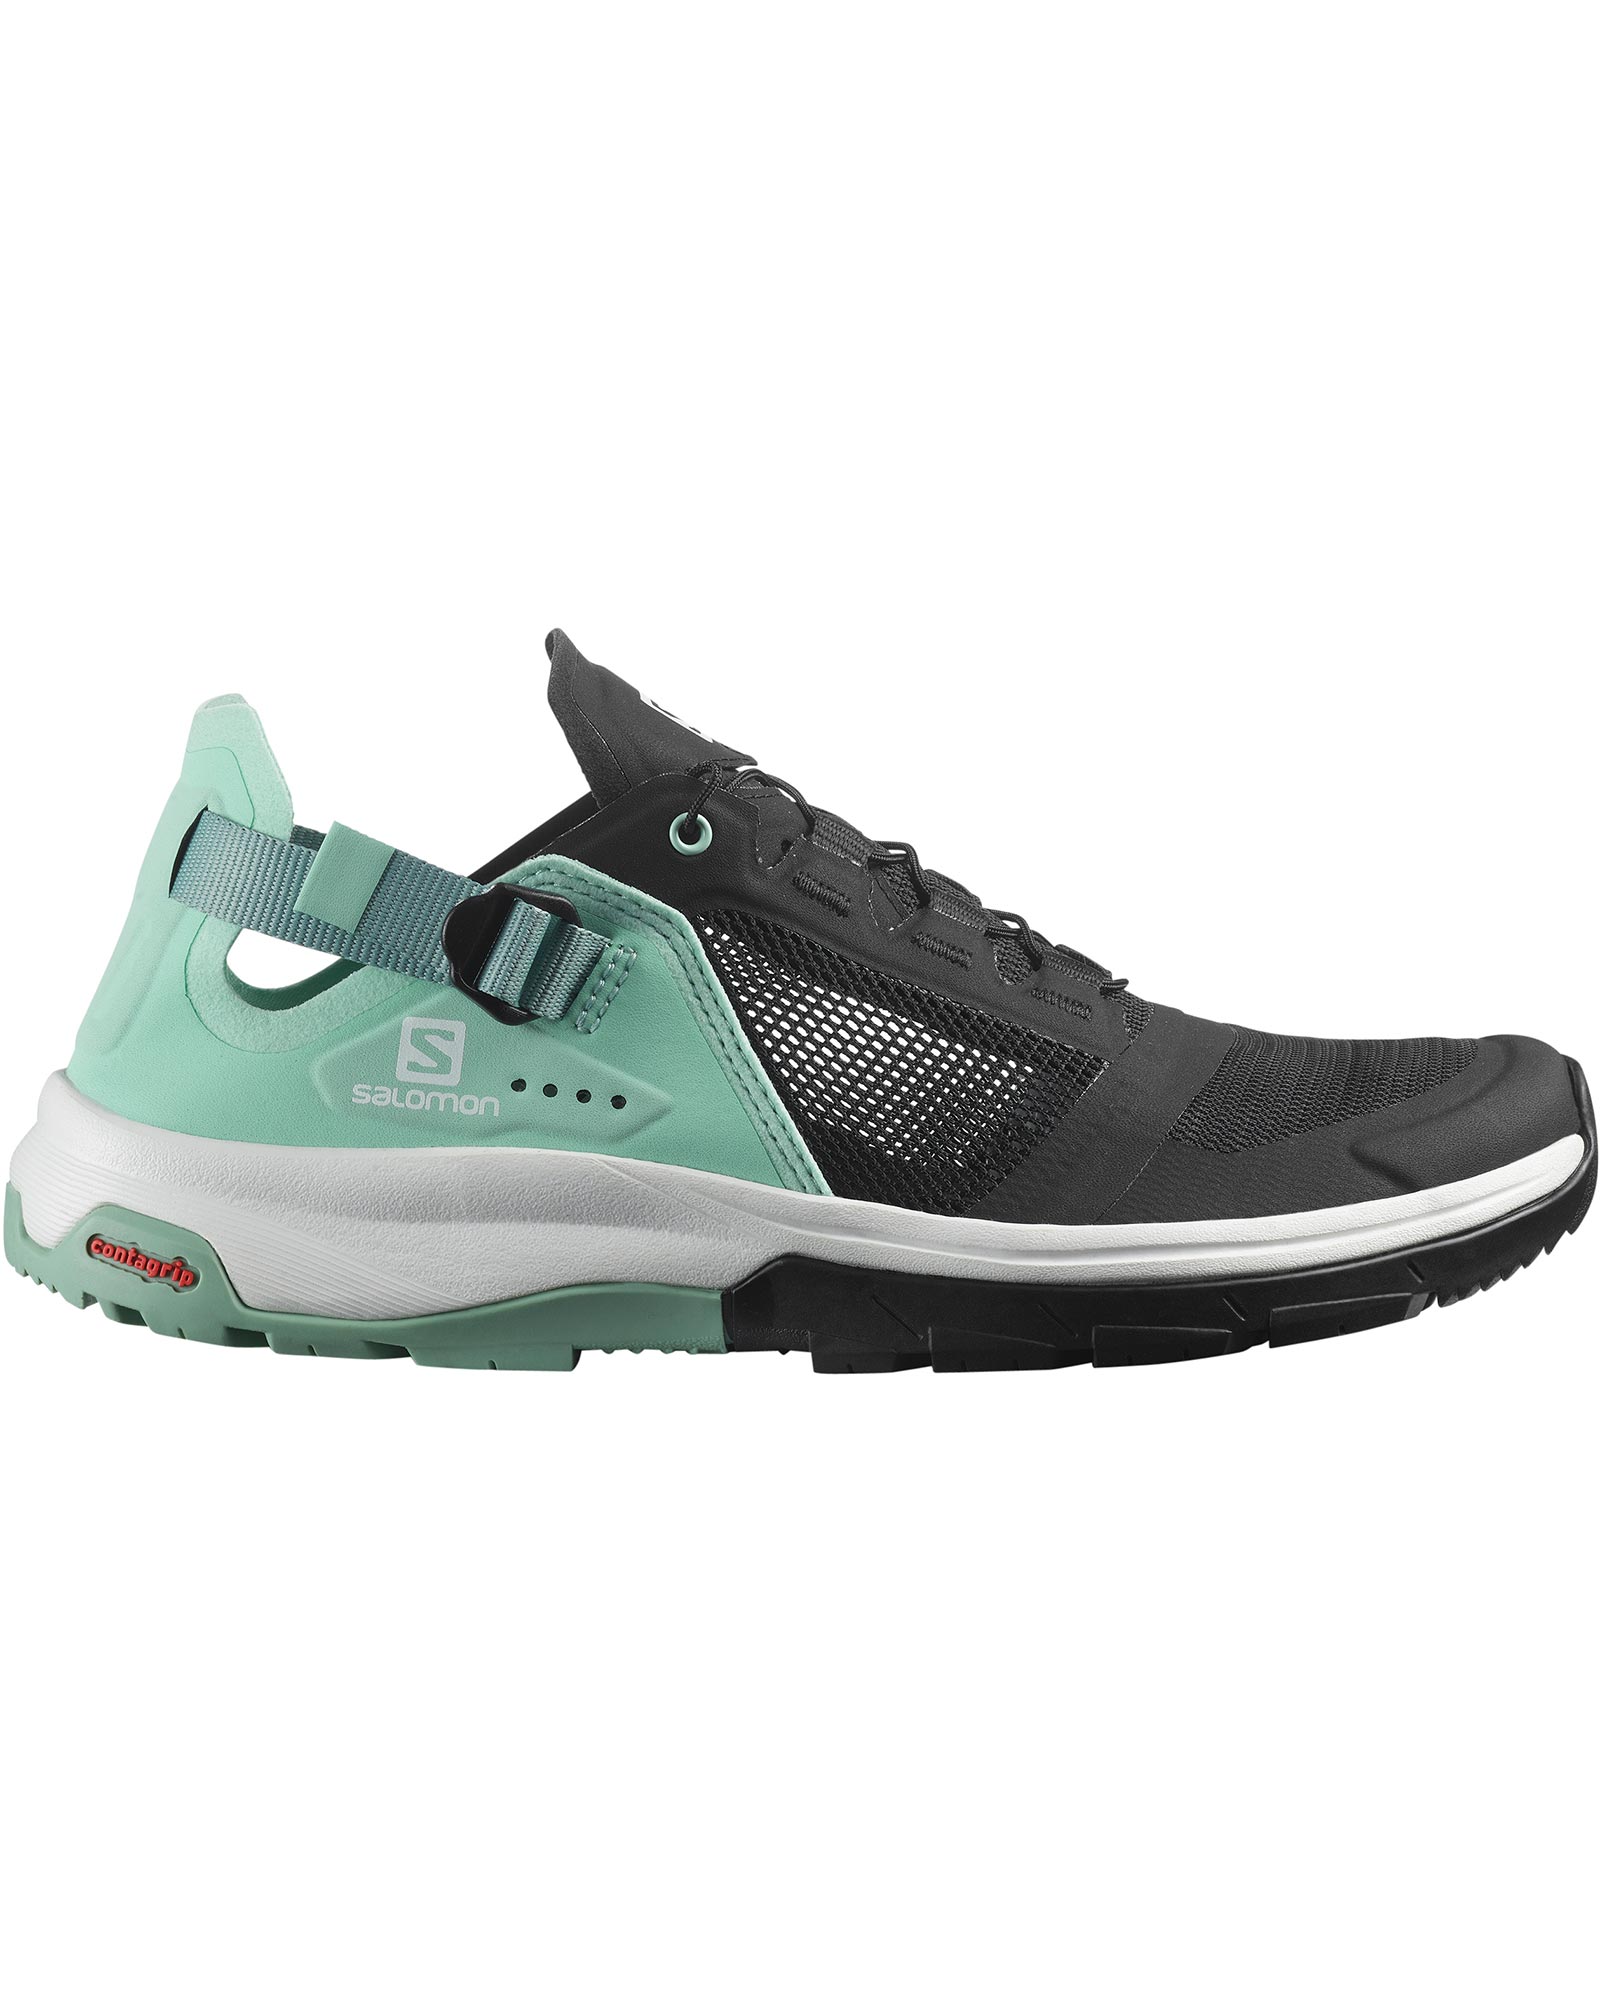 Salomon Tech Amphib 4 Women’s Shoes - Black/Yucca/Granite Green UK 5